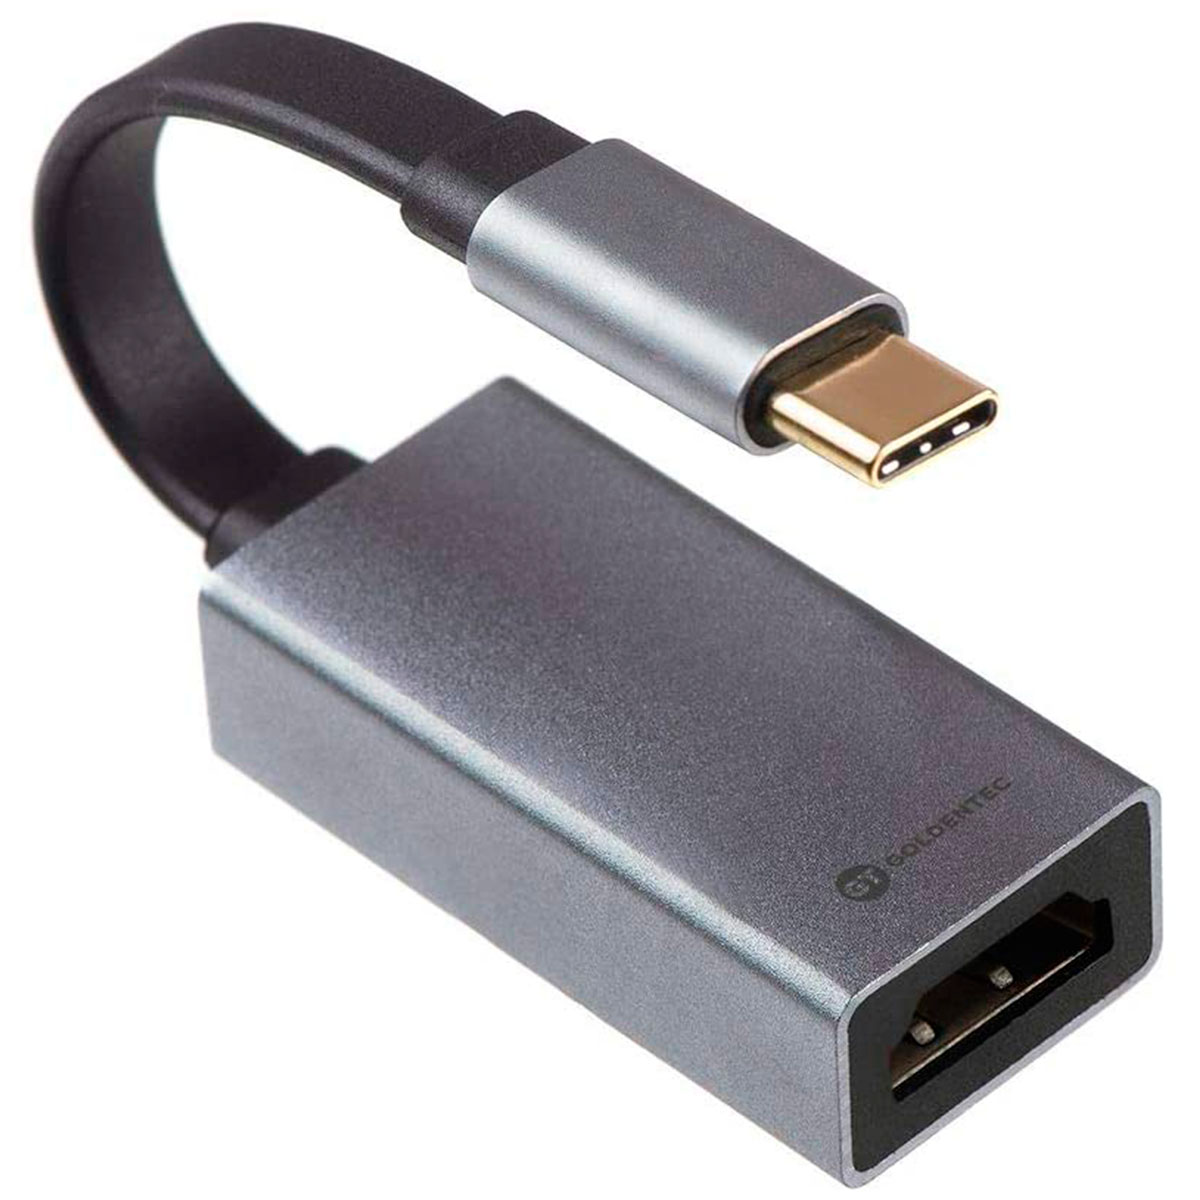 Adaptador Conversor USB-C para HDMI 4K - Goldentec 42316